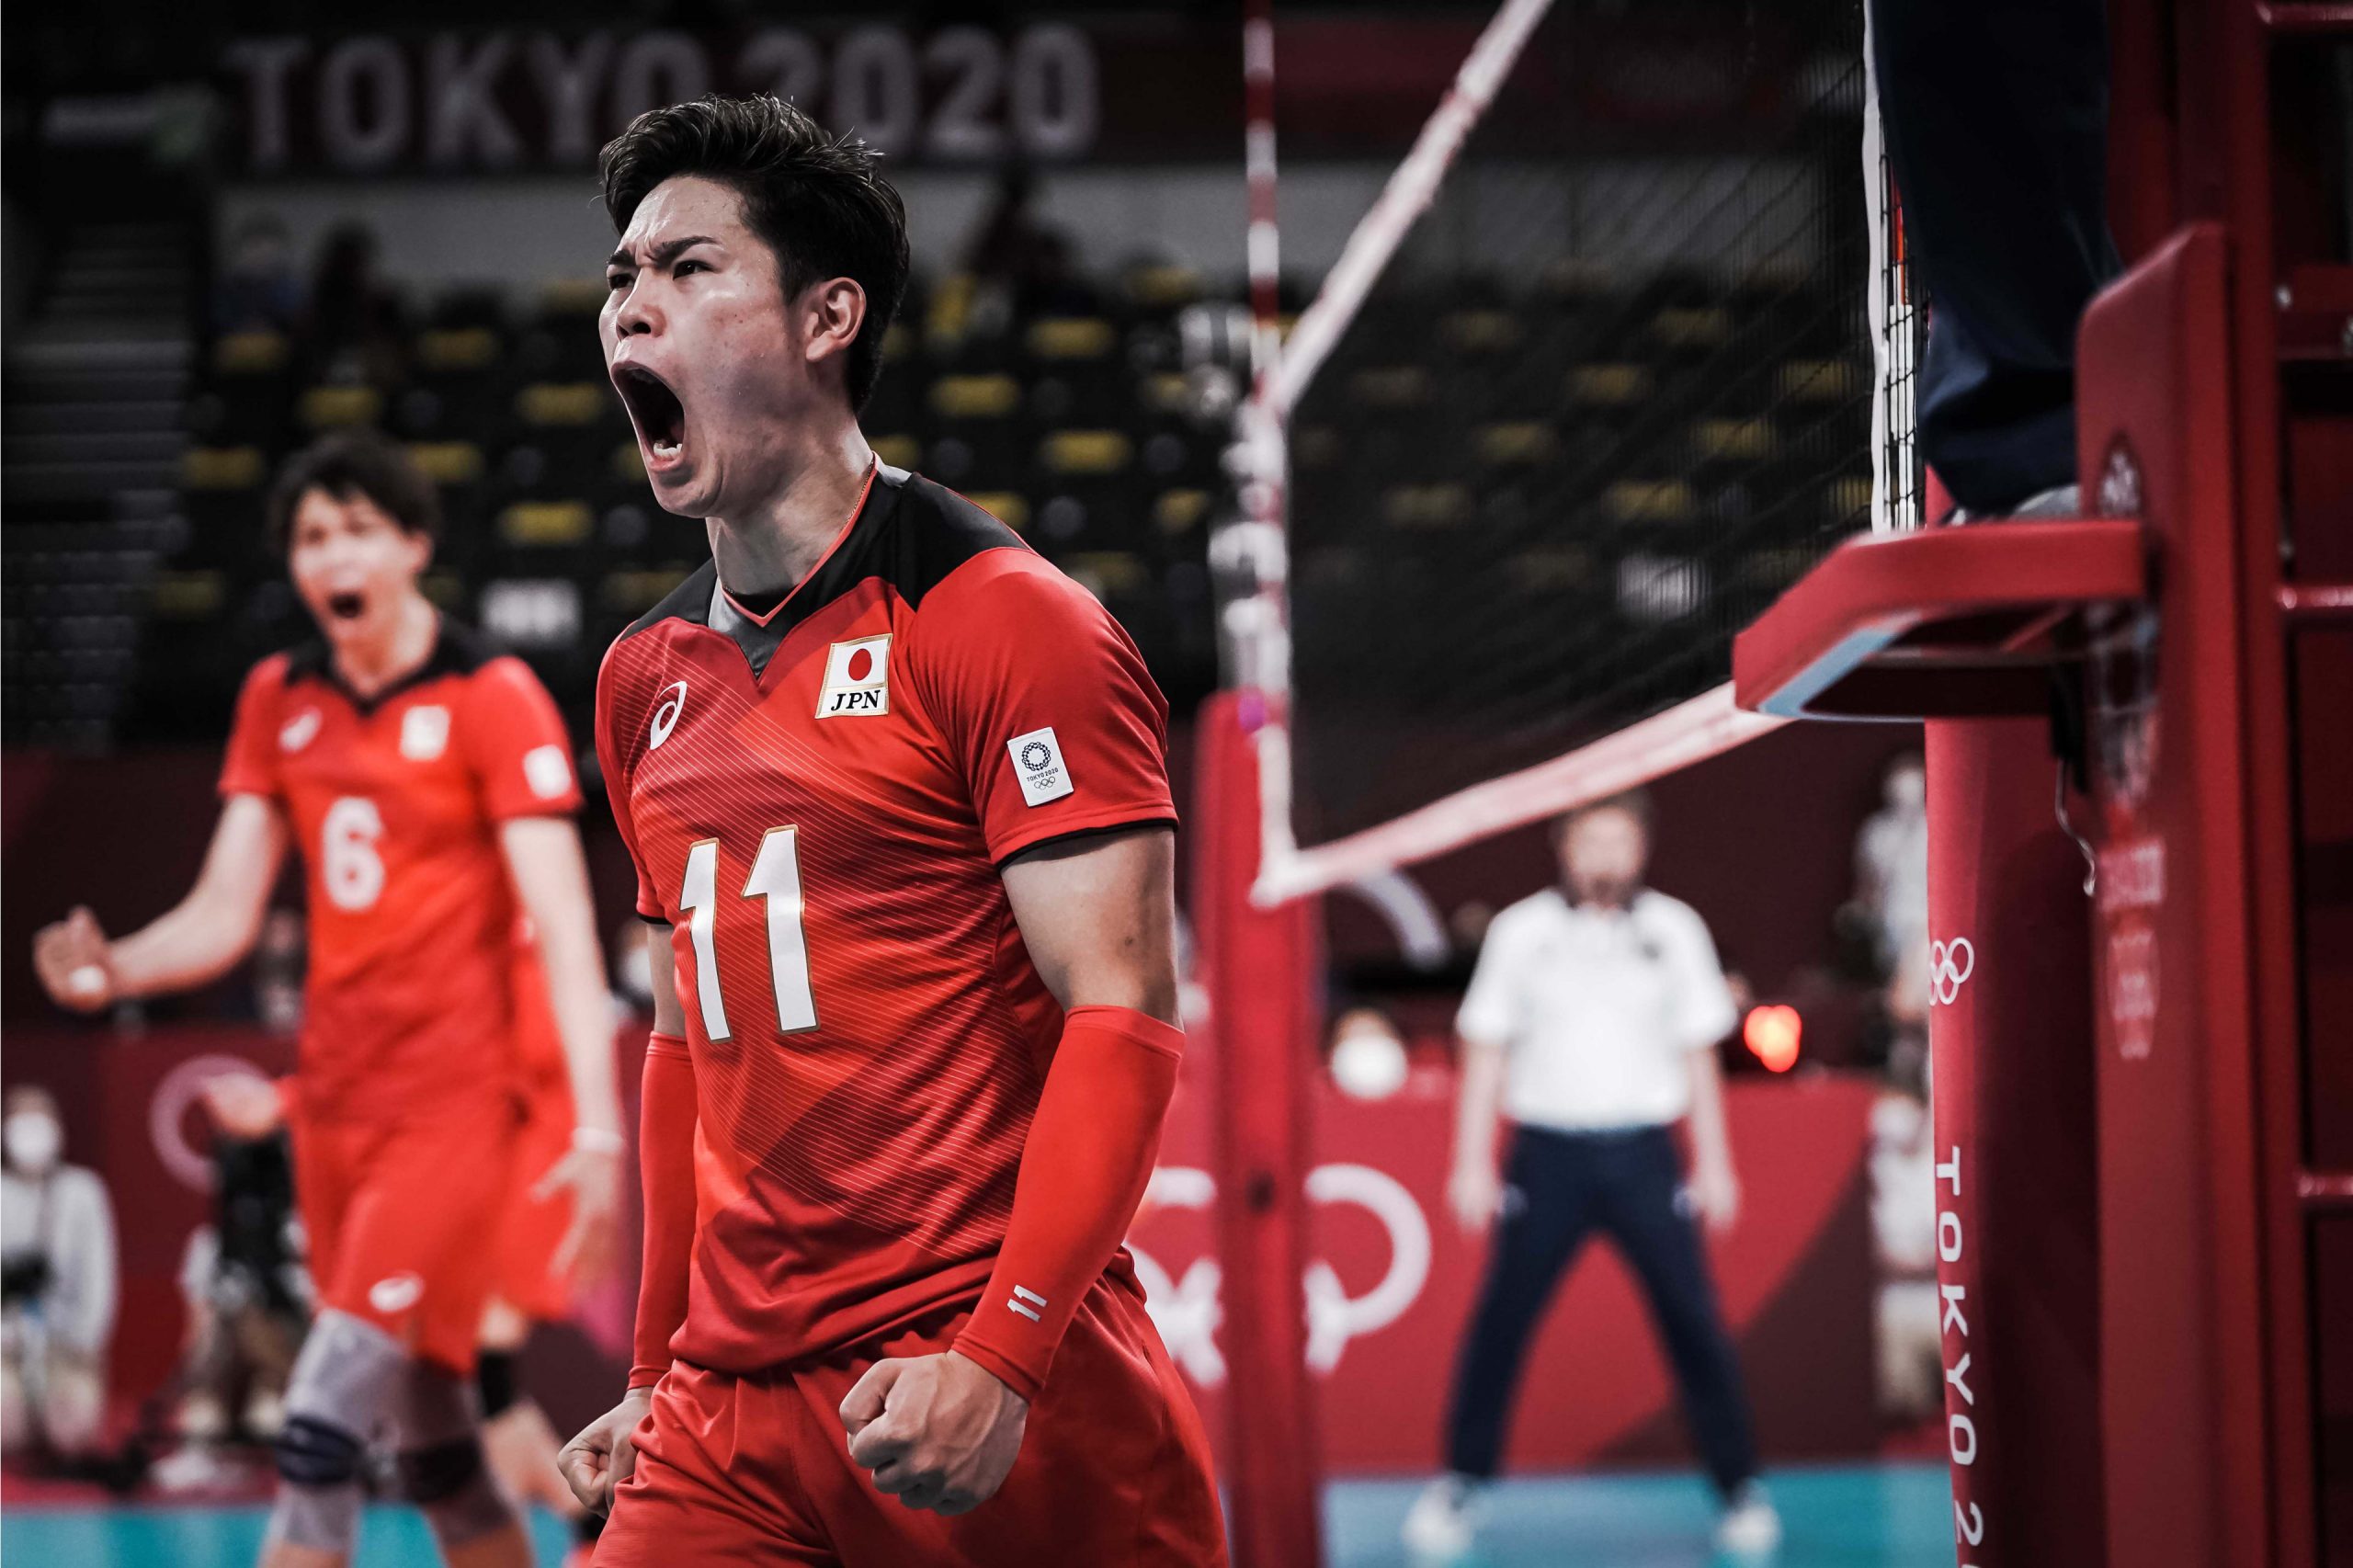 Yuji Nishida - ngọn cờ đầu của thế hệ bóng chuyền Nhật dù chiều cao khiêm tốn